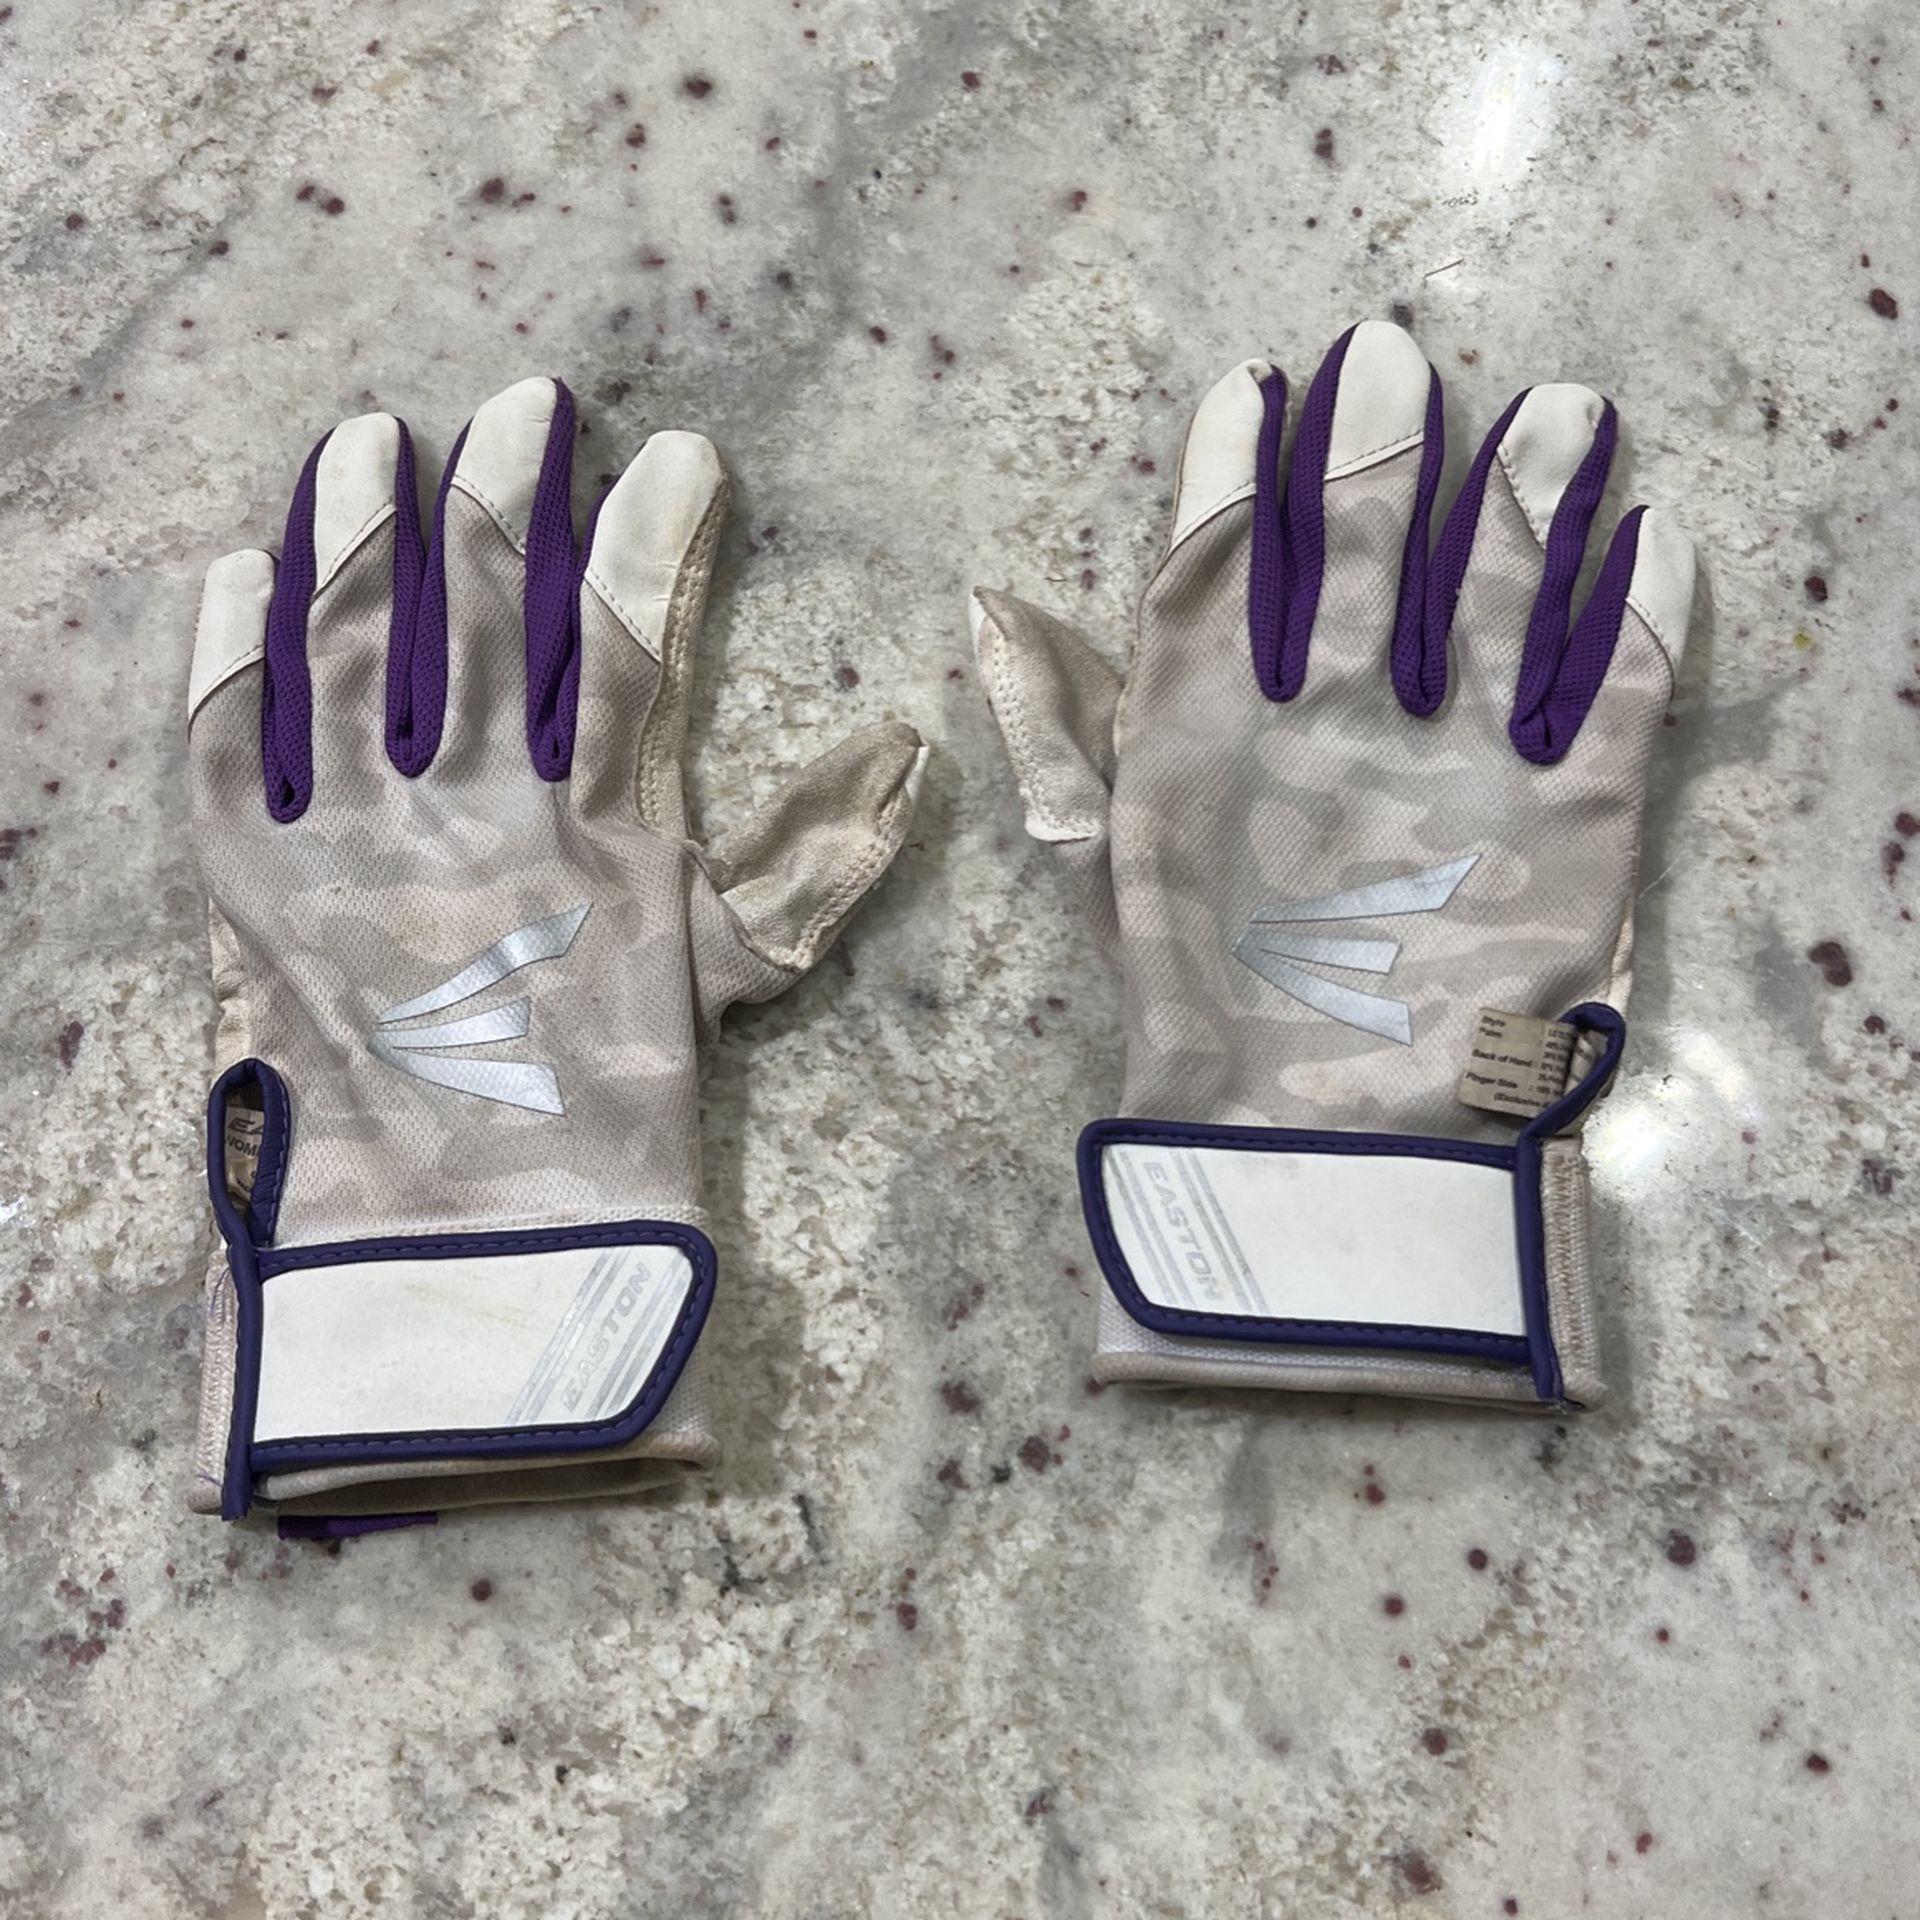 Easton softball batting gloves